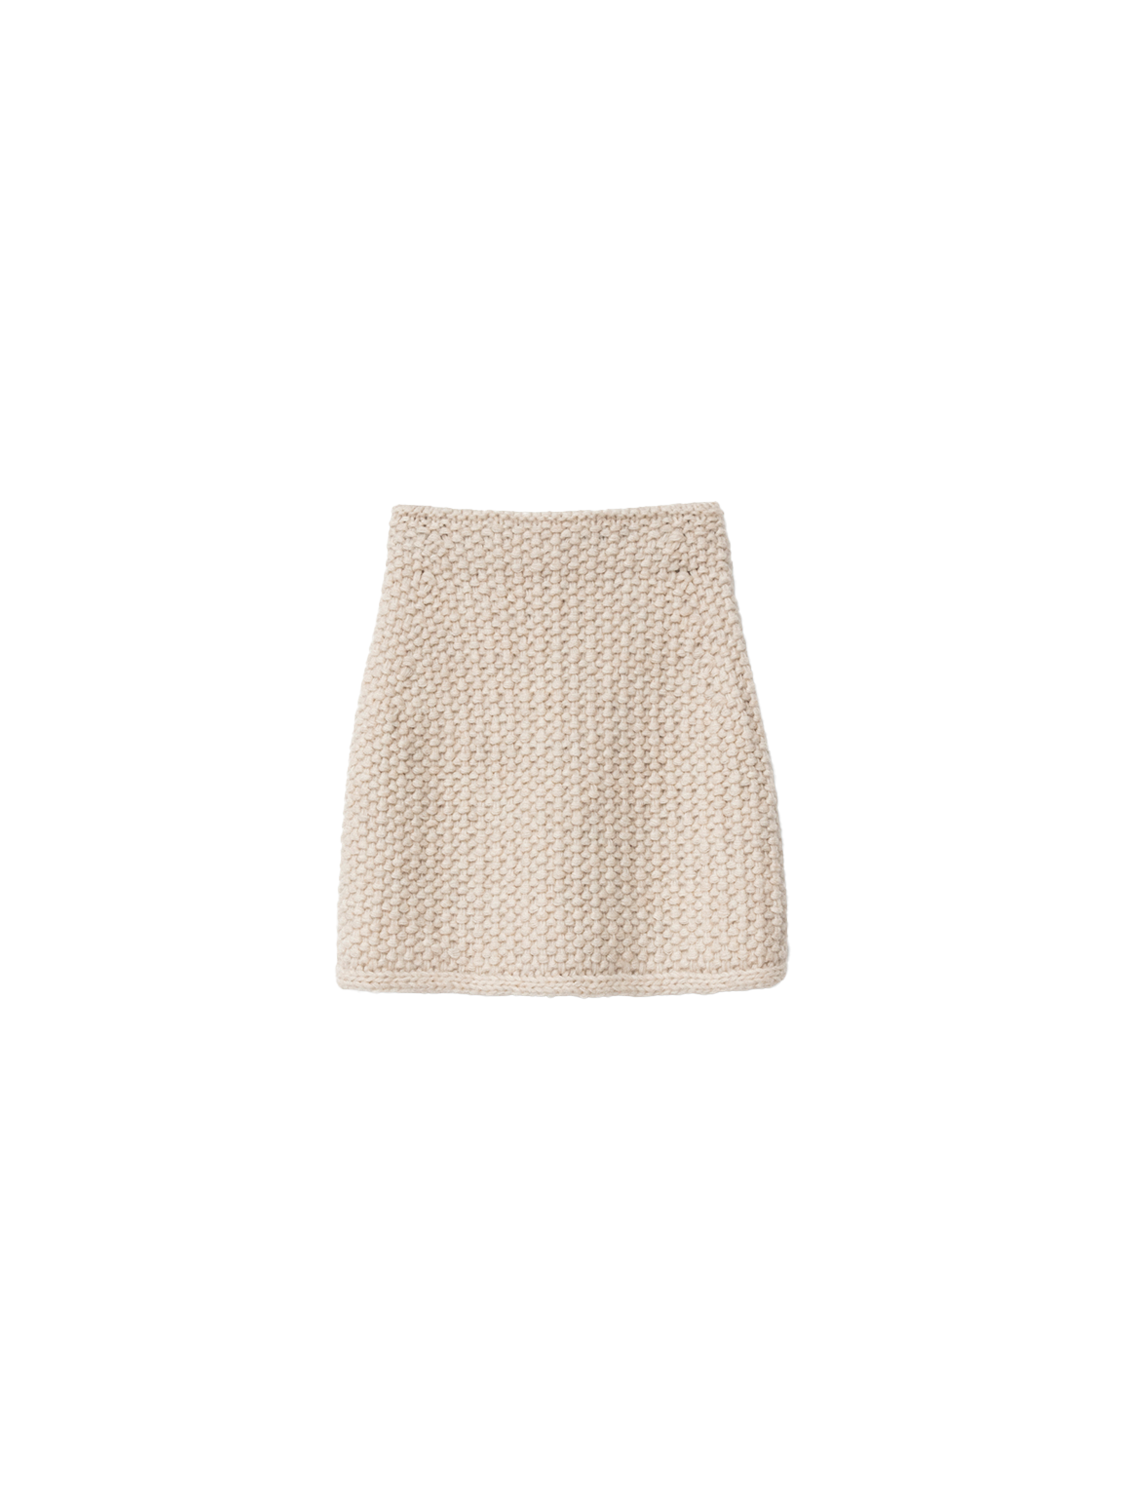 Iris von Arnim Jules – mini skirt made of cashmere-silk mix  beige XS/S